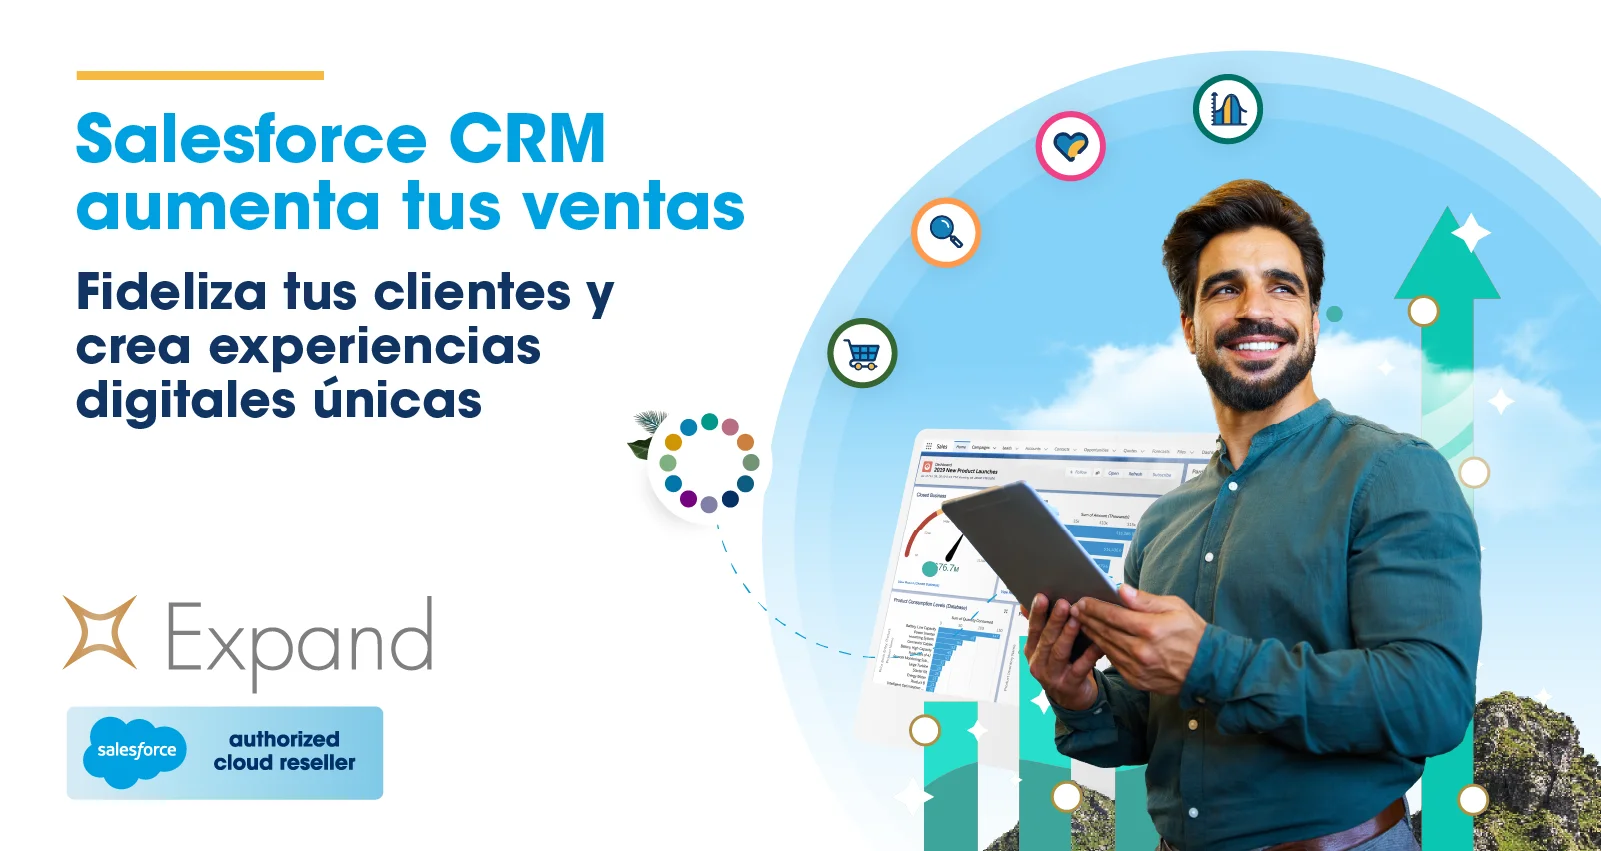 ¿Qué es Salesforce CRM? Conoce la plataforma que integra todas las soluciones para aumentar ventas, fidelizar clientes y crear experiencias digitales únicas.